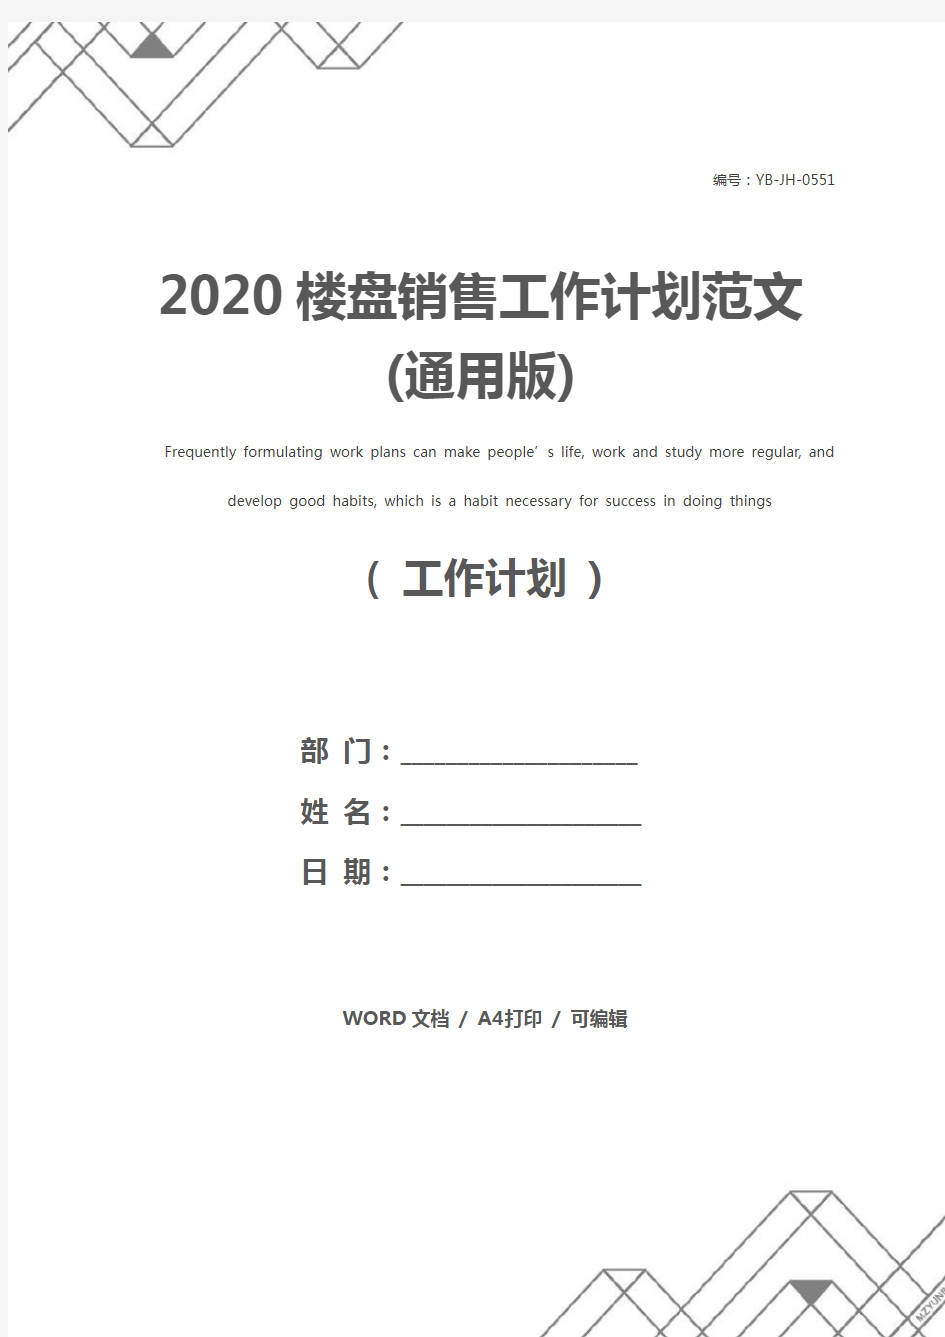 2020楼盘销售工作计划范文(通用版)